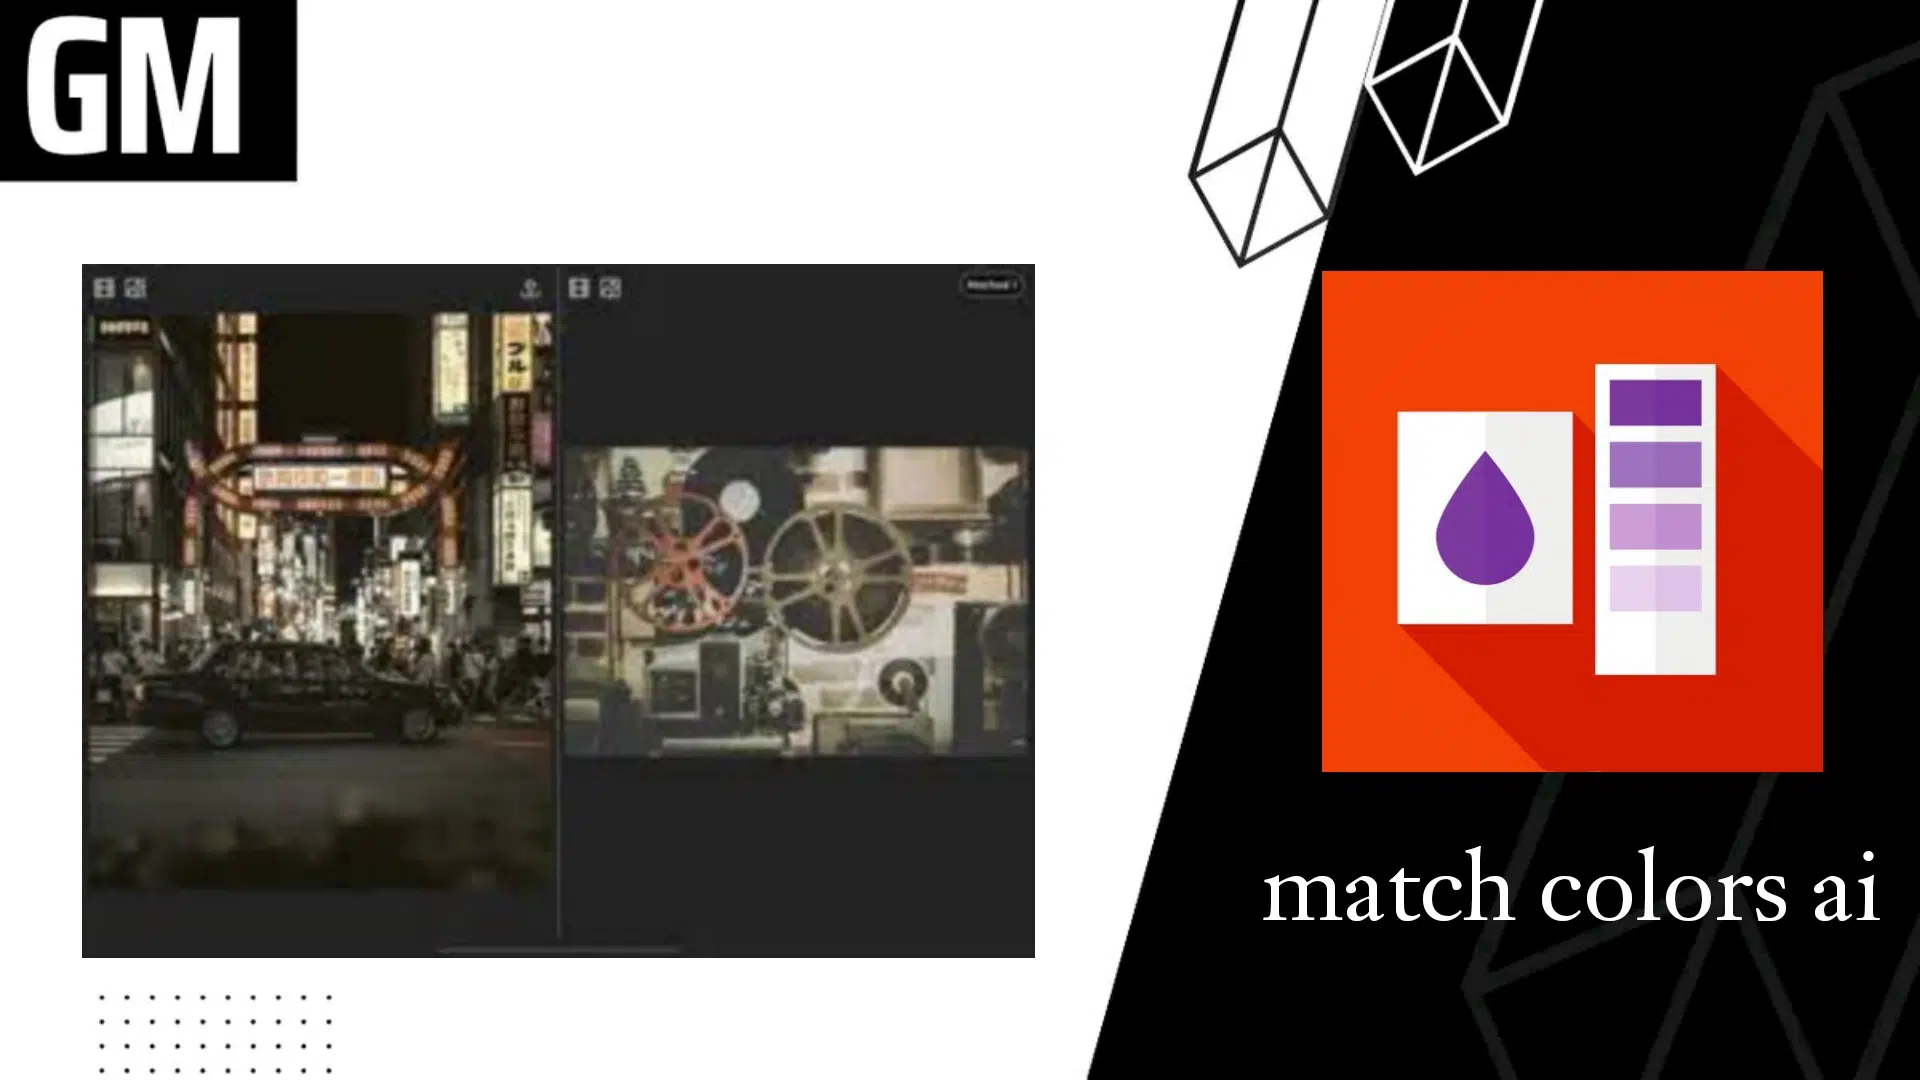 تحميل تطبيق match colors ai لتلوين الصور والفيديوهات بالذكاء الاصطناعي اخر اصدار للاندرويد و الايفون 2023 مجانا